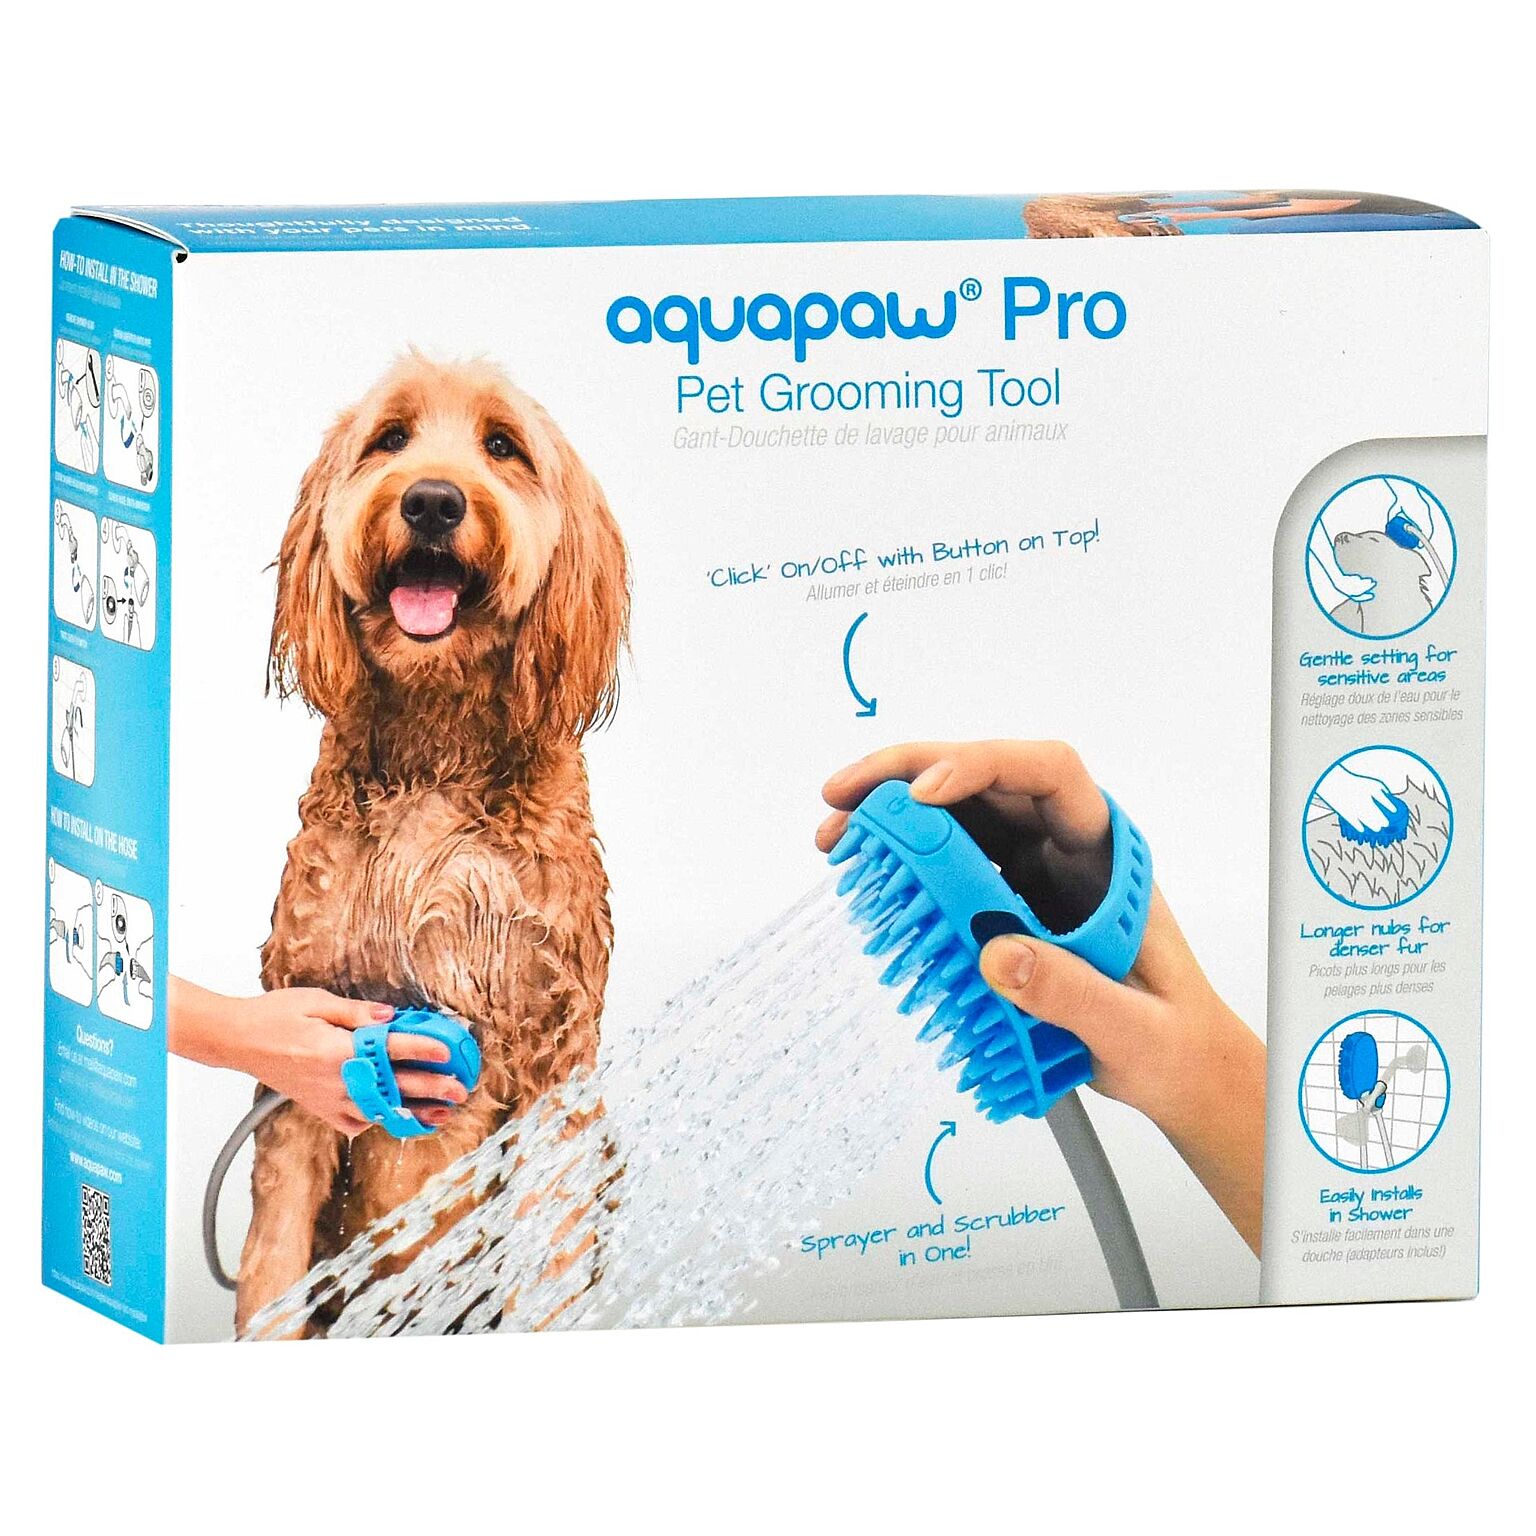 【Aquapaw】 アクアパウ Pro Pet Grooming Tool プロ ペット グルーミングシャワー シャワーヘッド シャワーホース